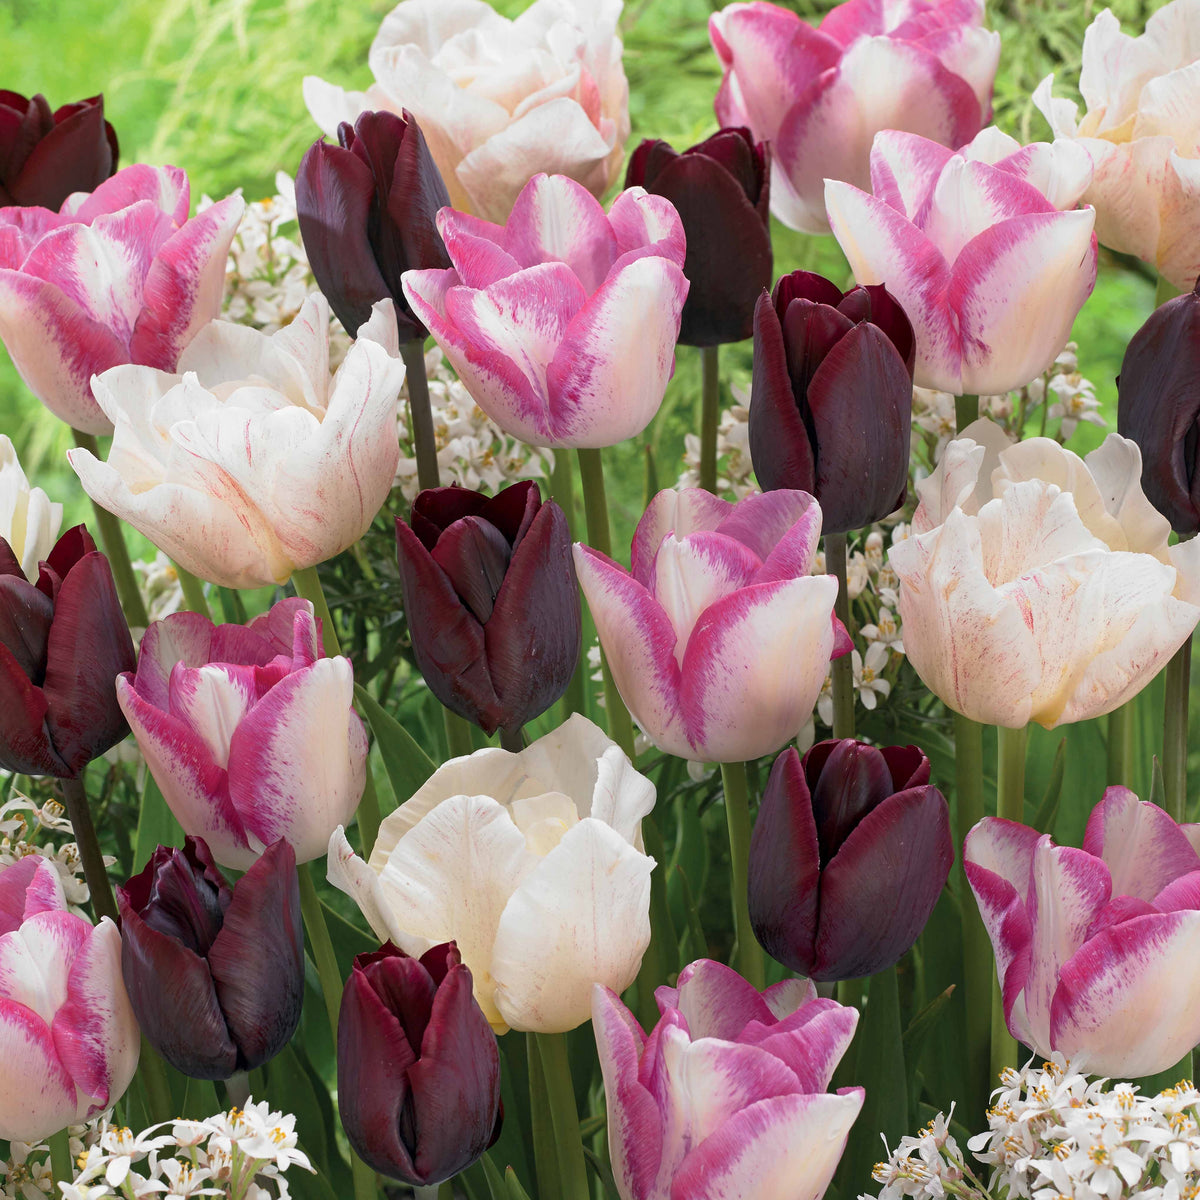 15 Tulipes longues tiges : Silk Road, Del Piero, Ronaldo en mélange - Tulipa slik road, del piero, ronaldo - Bulbes à fleurs